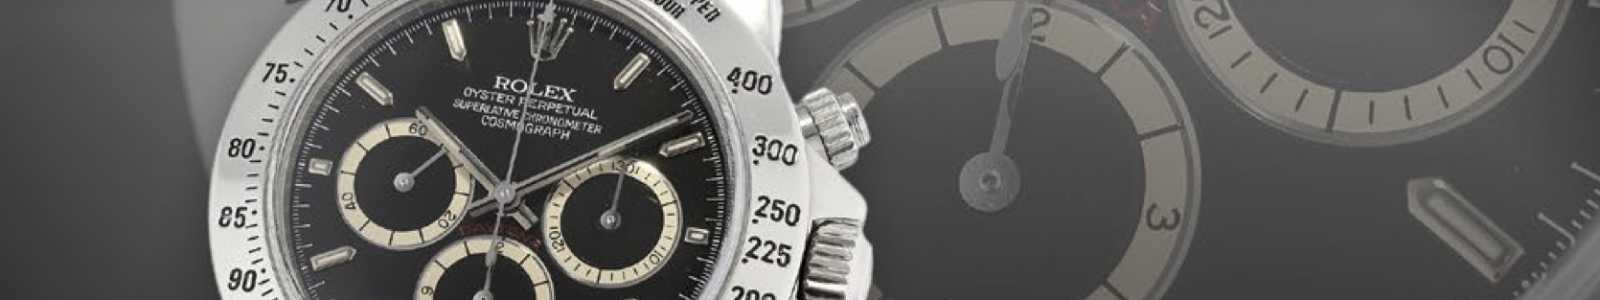 Высококачественные сумки и наручные часы, изысканные коллекционные часы